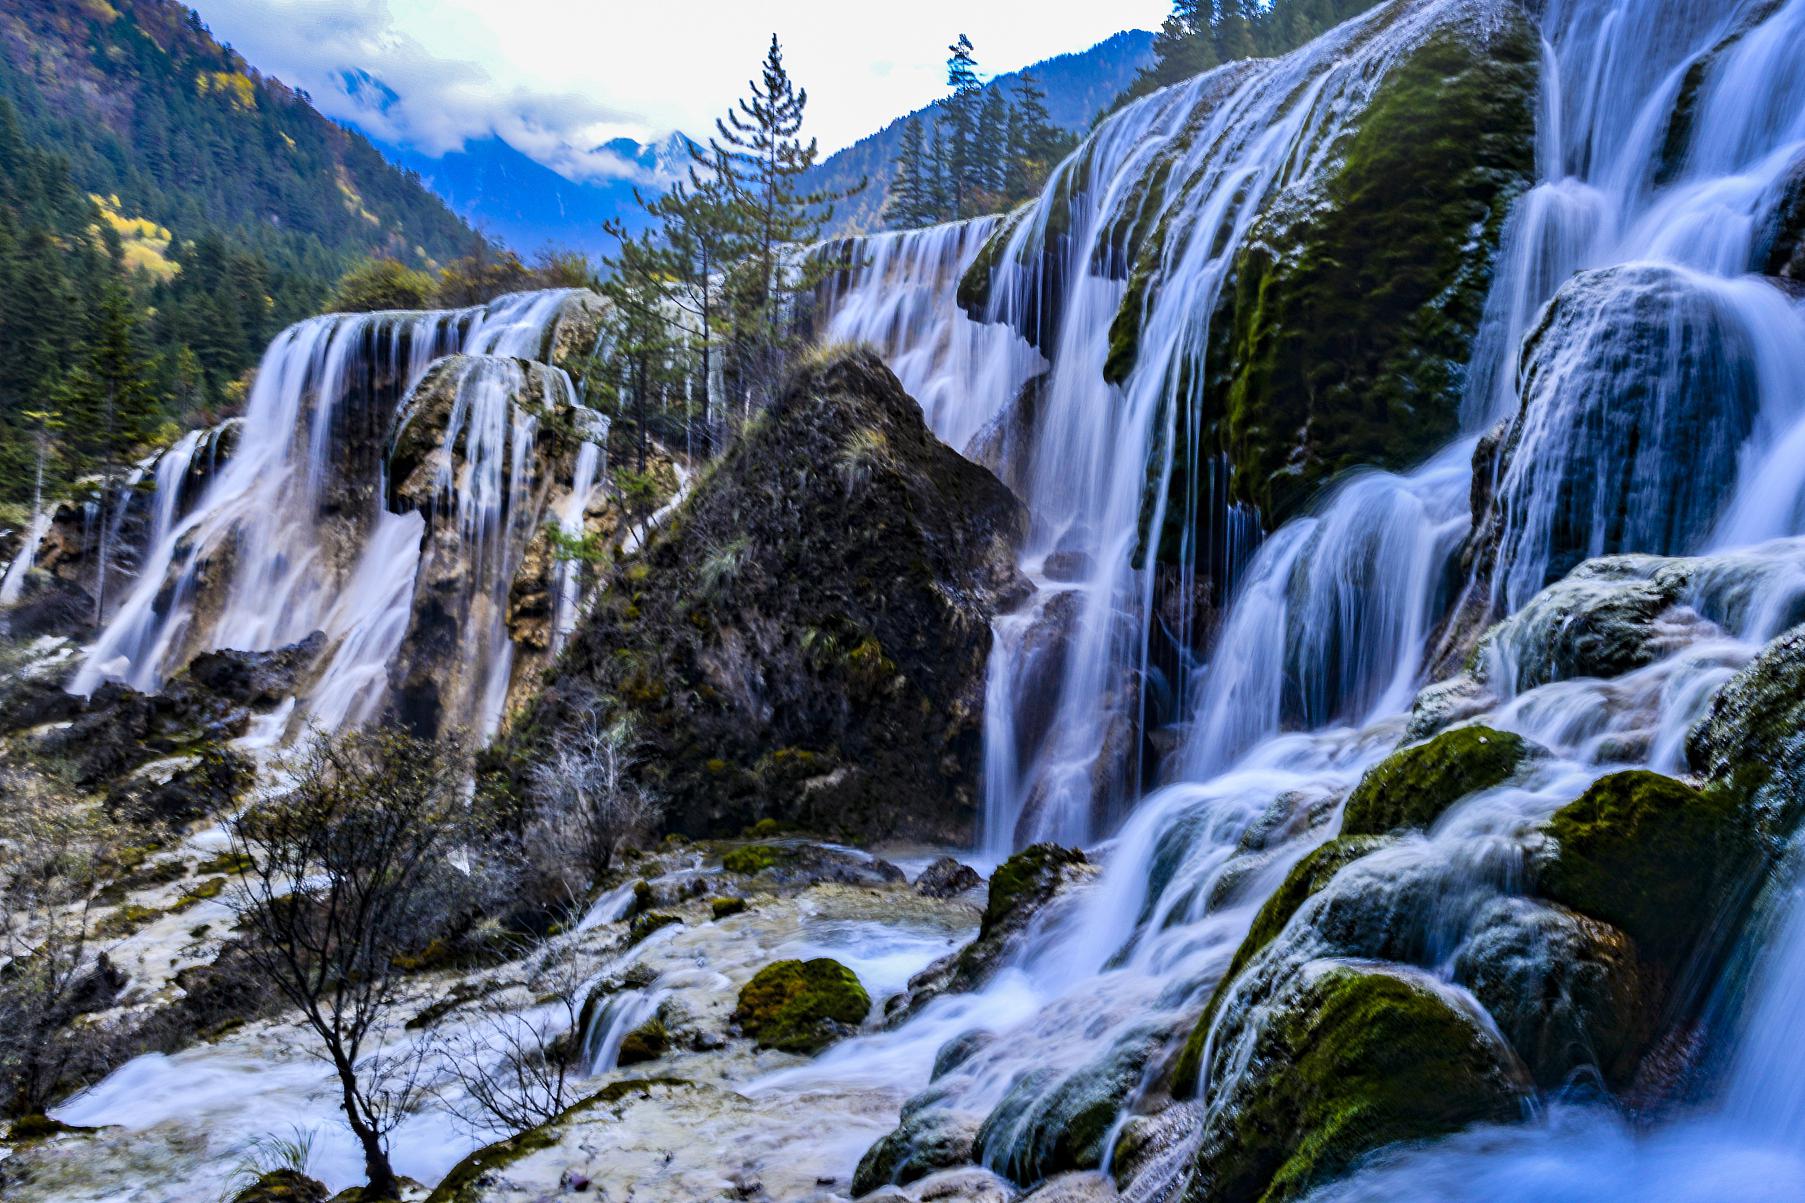 中国最美的瀑布景点 中国的自然风光千姿百态,其中瀑布景观以其磅礴的